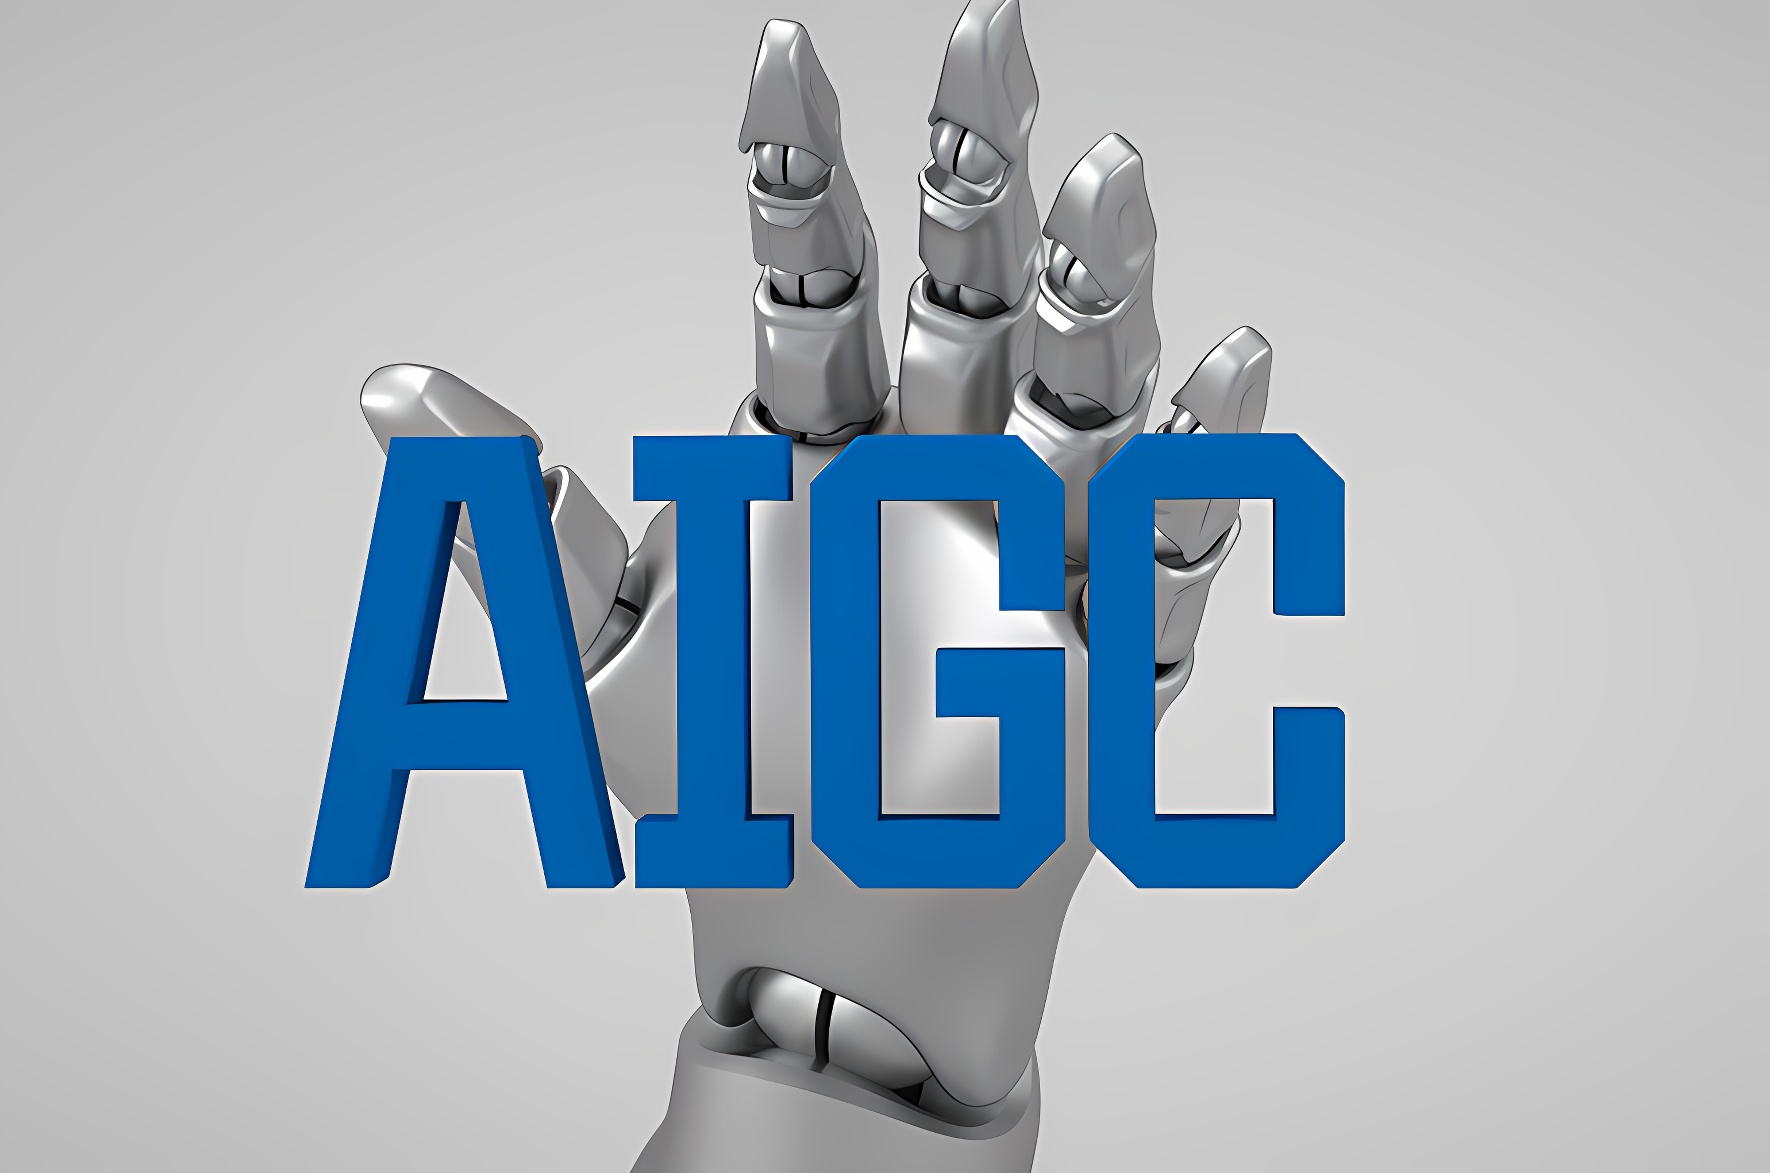 图片展示了一个机器人手指触碰着蓝色的“AIGC”四个大写英文字母，背景为简洁的灰色调。